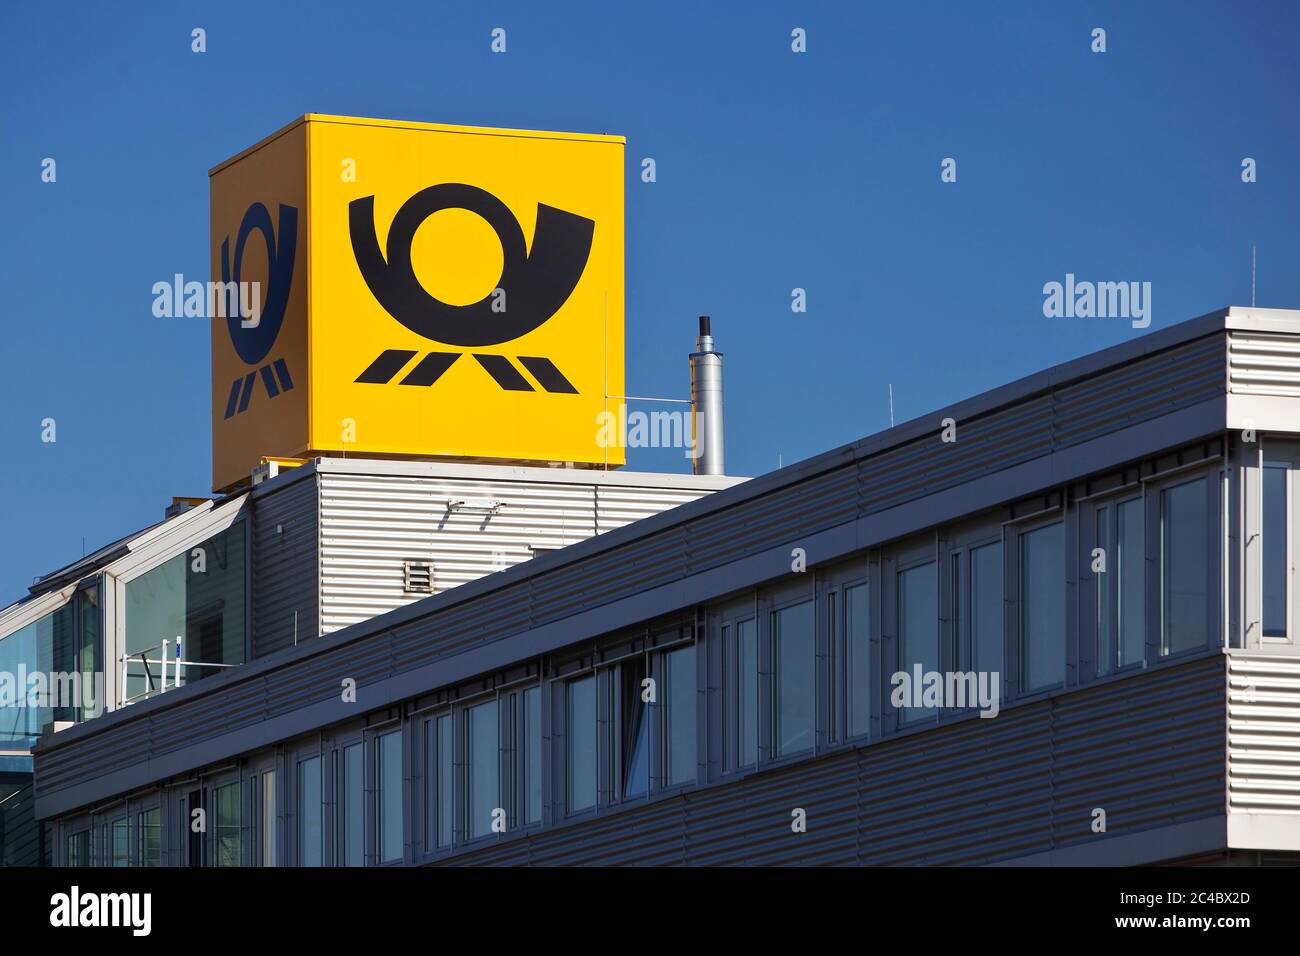 Posta corno immagini e fotografie stock ad alta risoluzione - Alamy